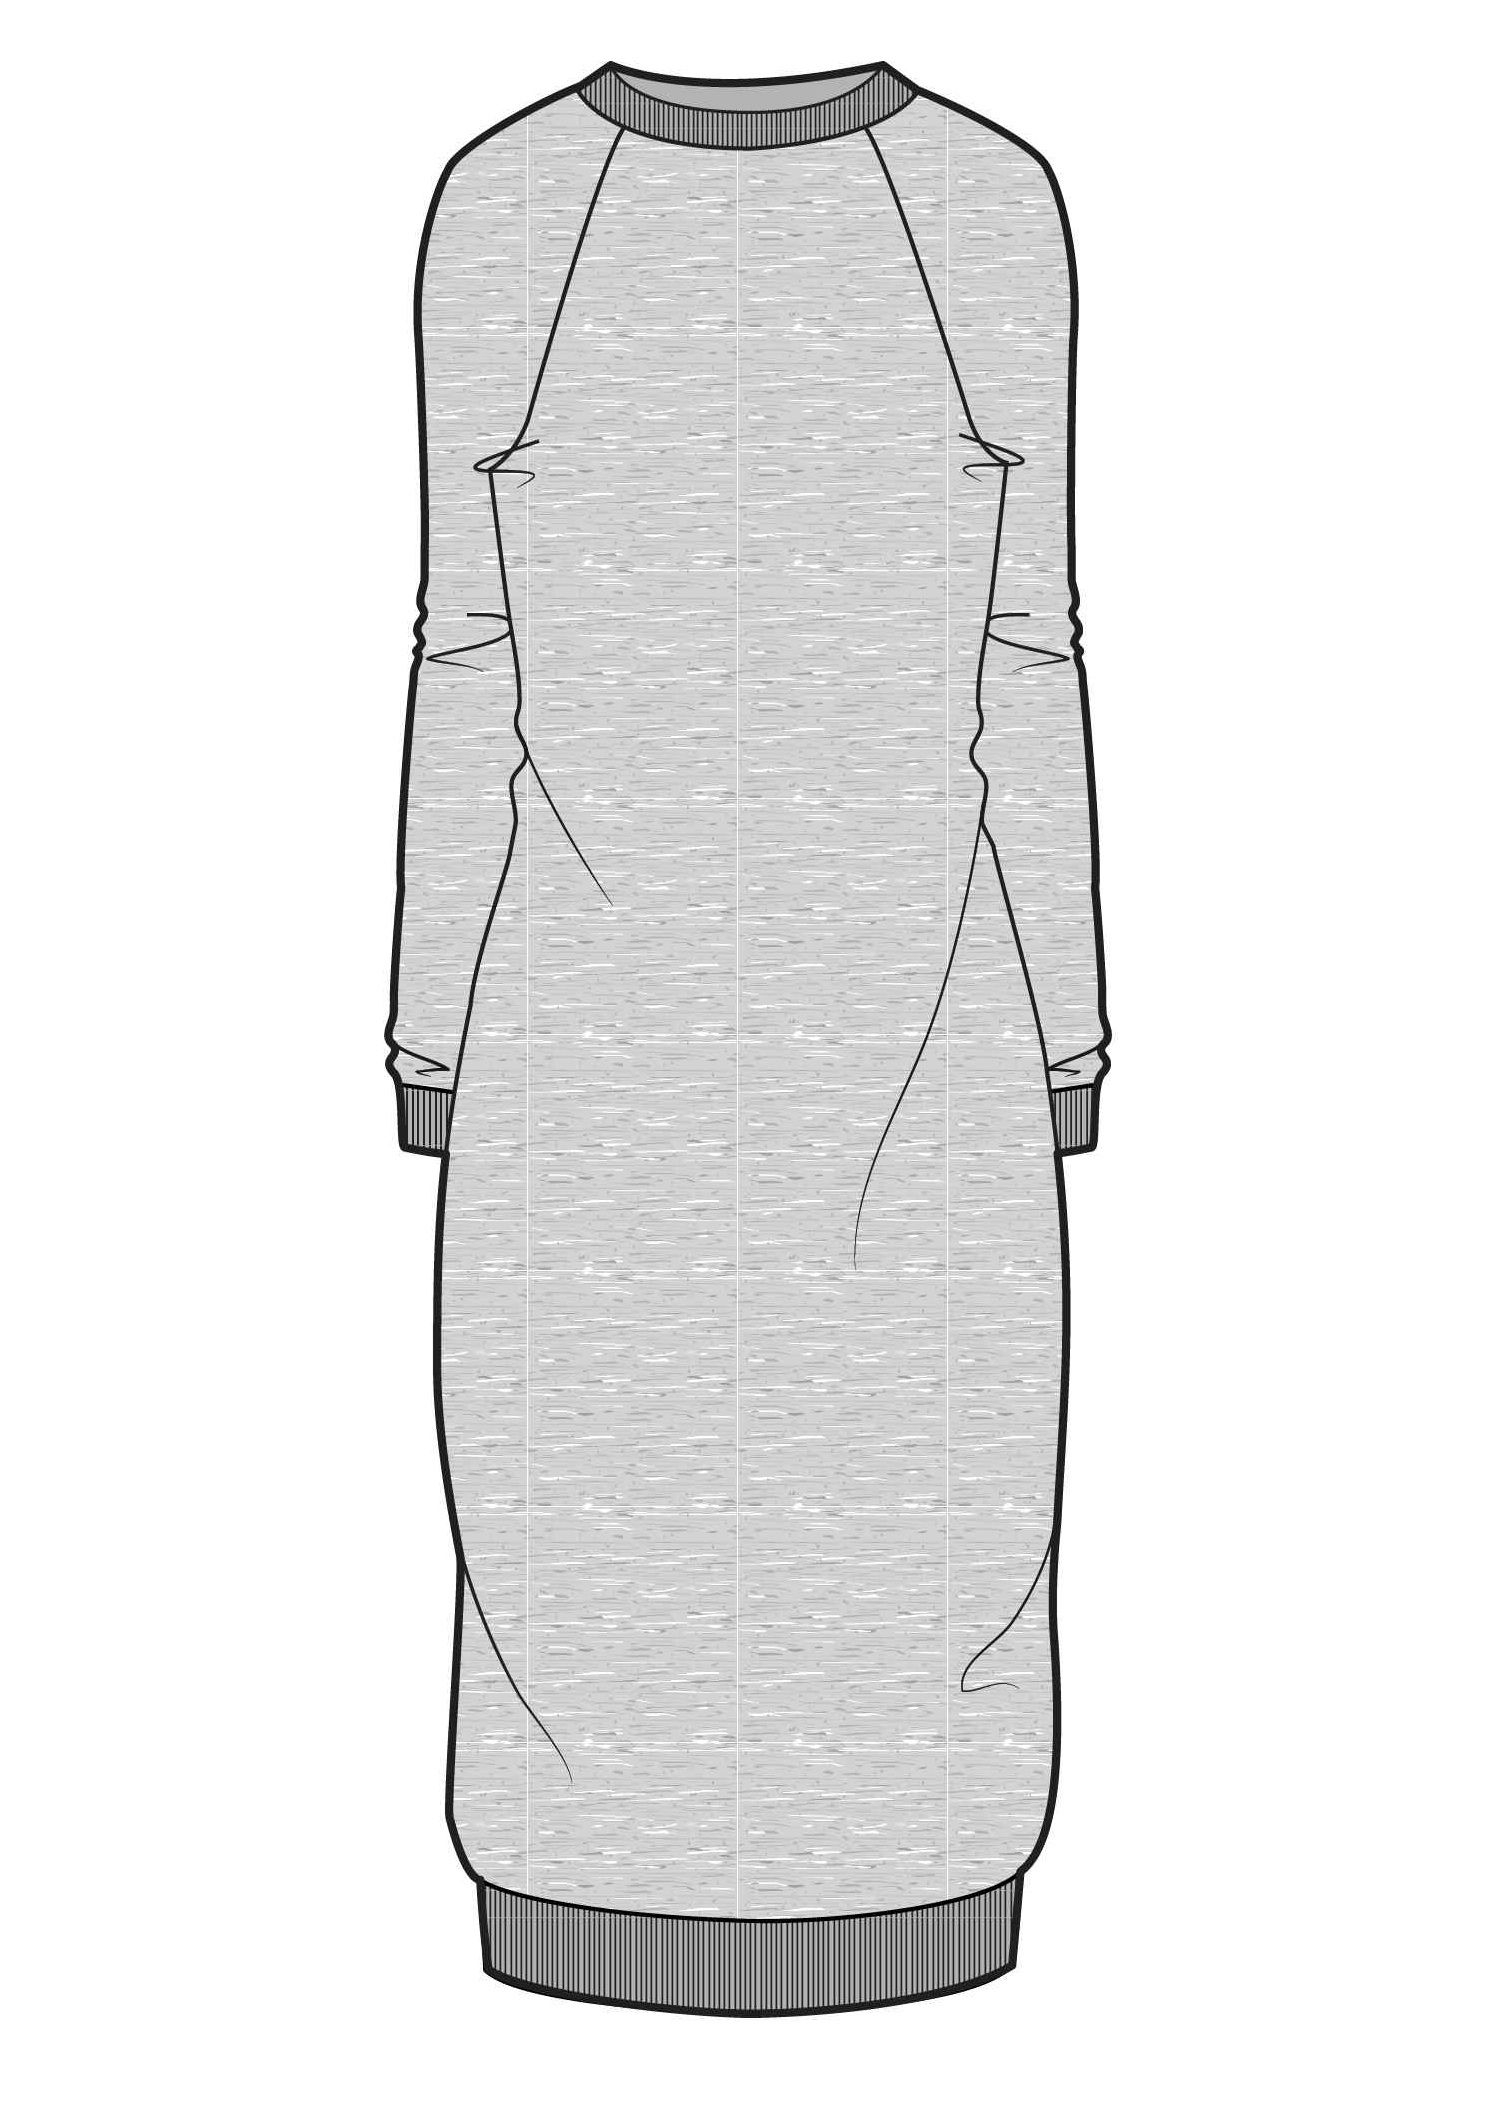 Удлиненный рисунок. Эскиз трикотажного платья. Технический эскиз платья. Лекало платье толстовка. Технический эскиз платья из трикотажа.